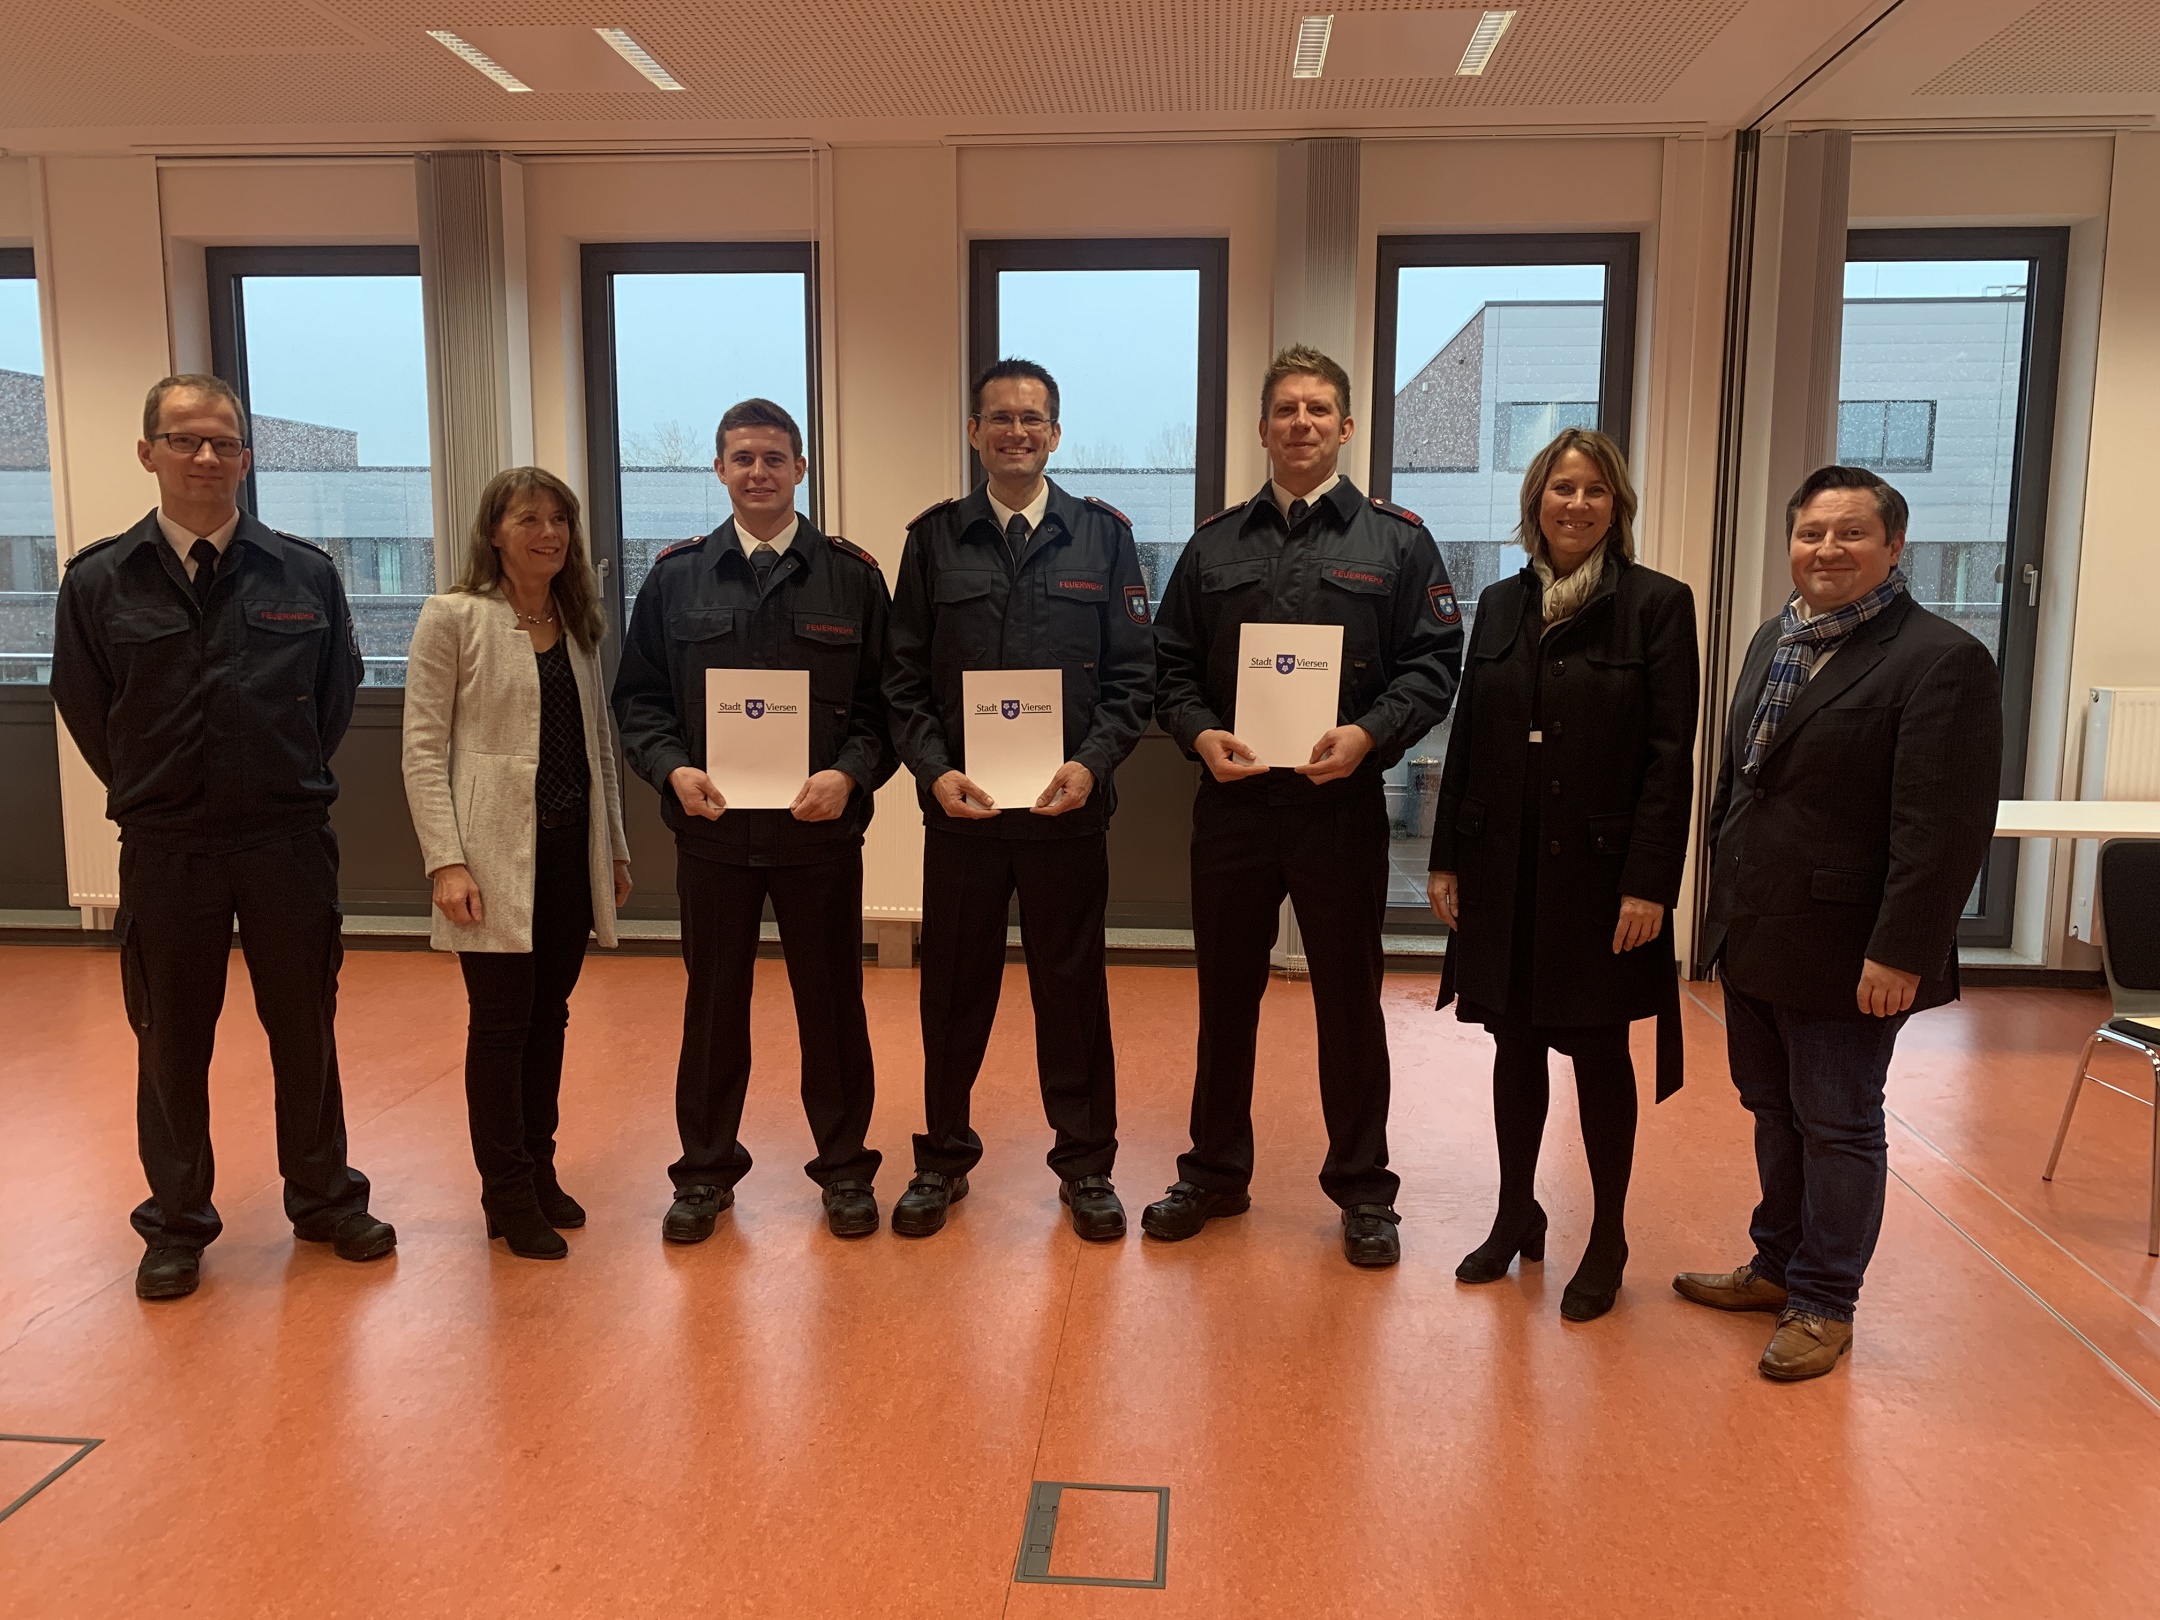 Gruppenbild der neuen Brandmeister mit den Vertreterinnen und Vertretern der Stadt Viersen